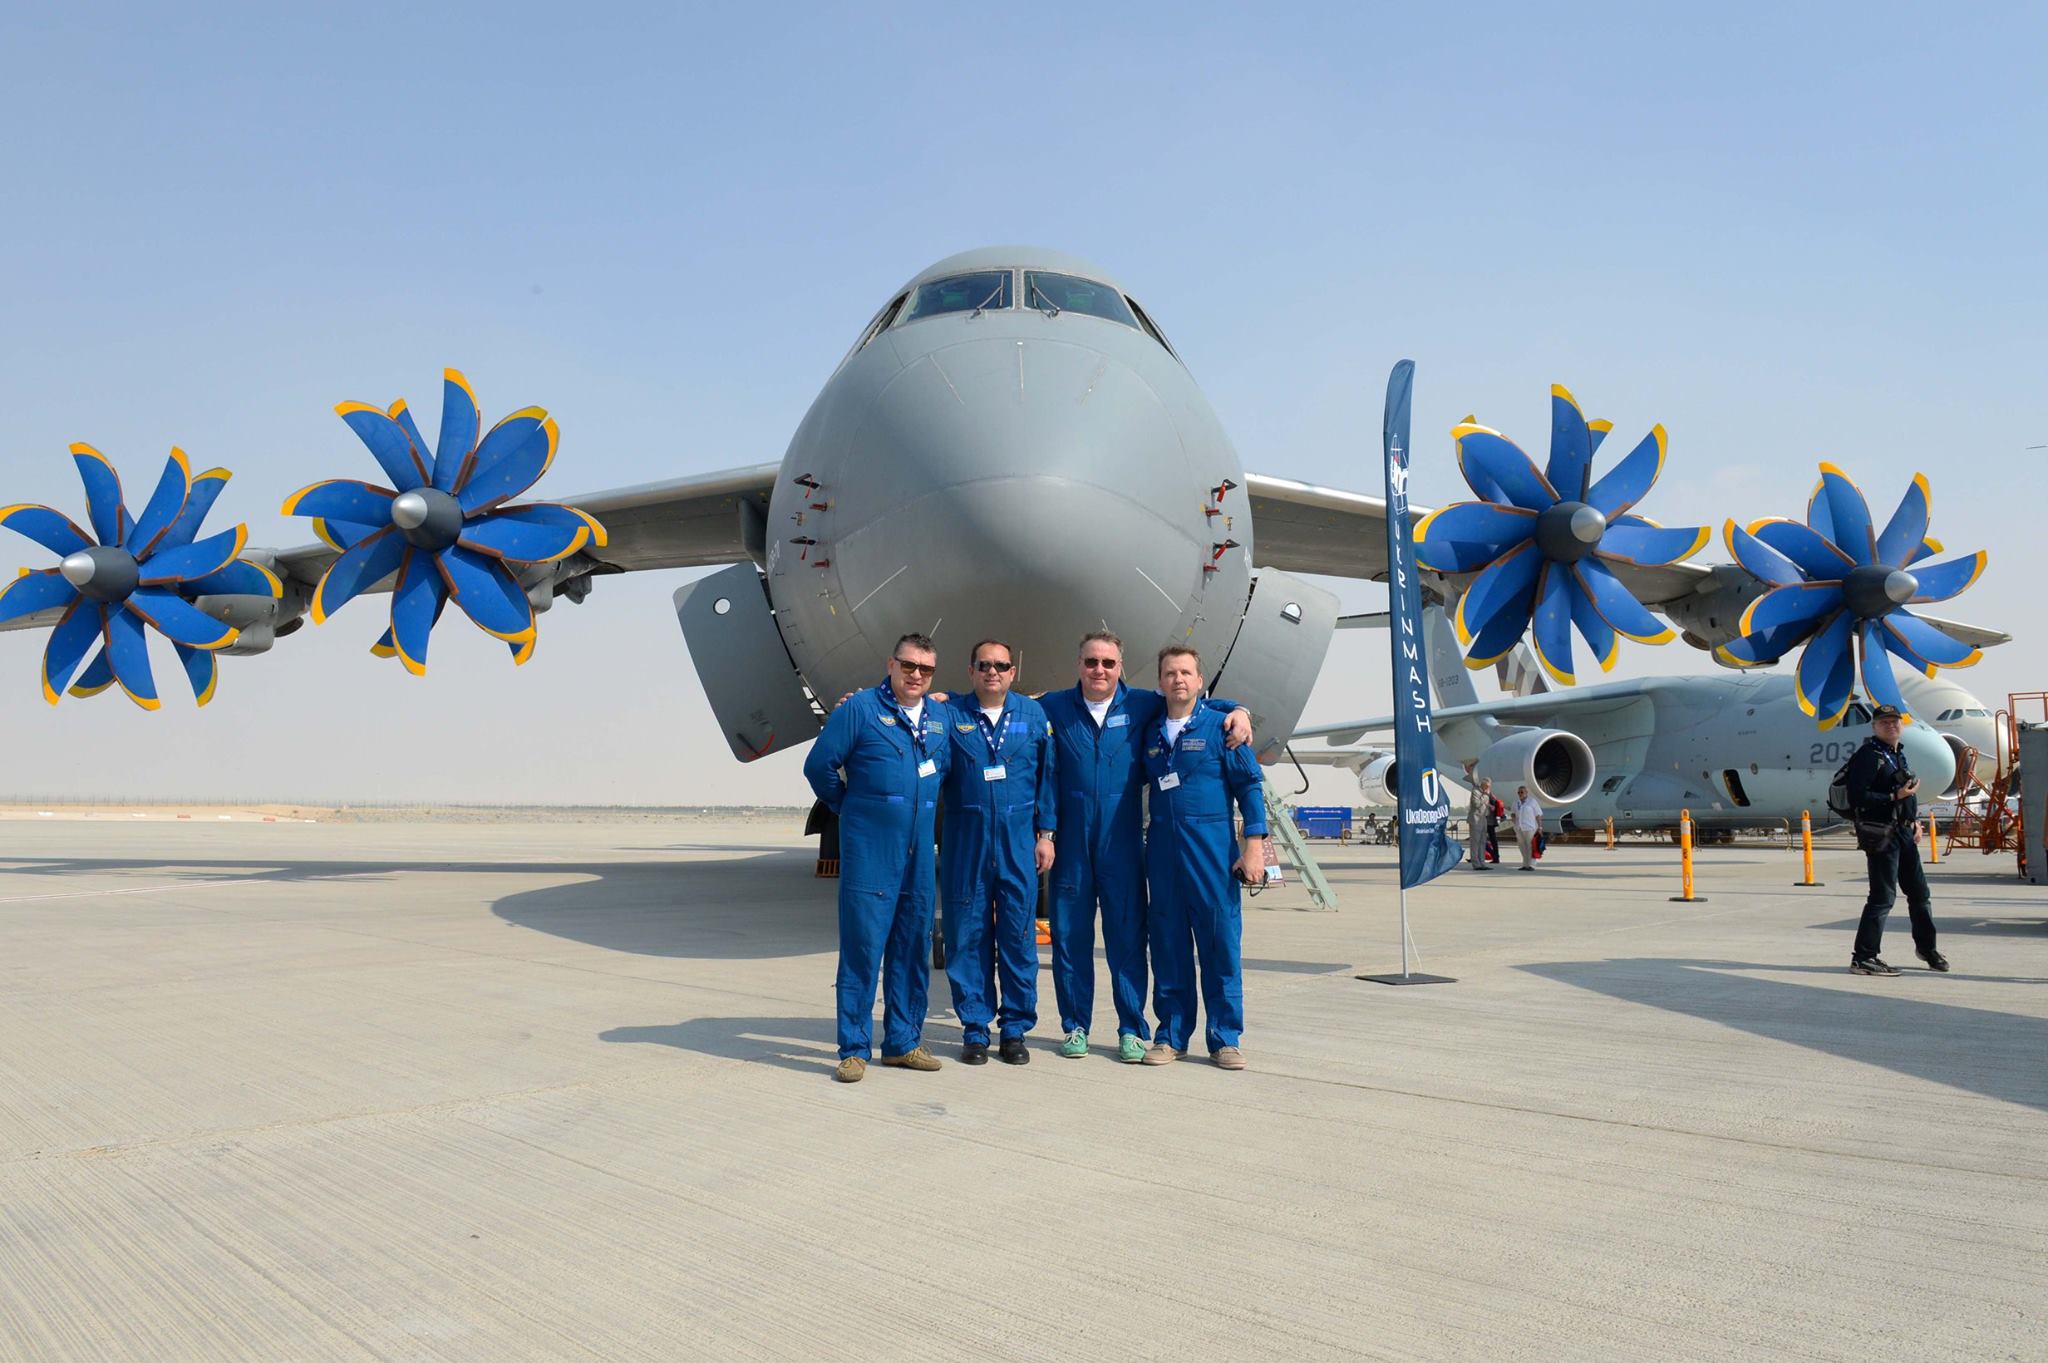 Новейшие разработки ГП "Антонов" уверенно покоряют Ближний Восток: украинские военные самолеты зрелищно пронеслись в небе над Дубаем - в Сети появились мощные видеокадры